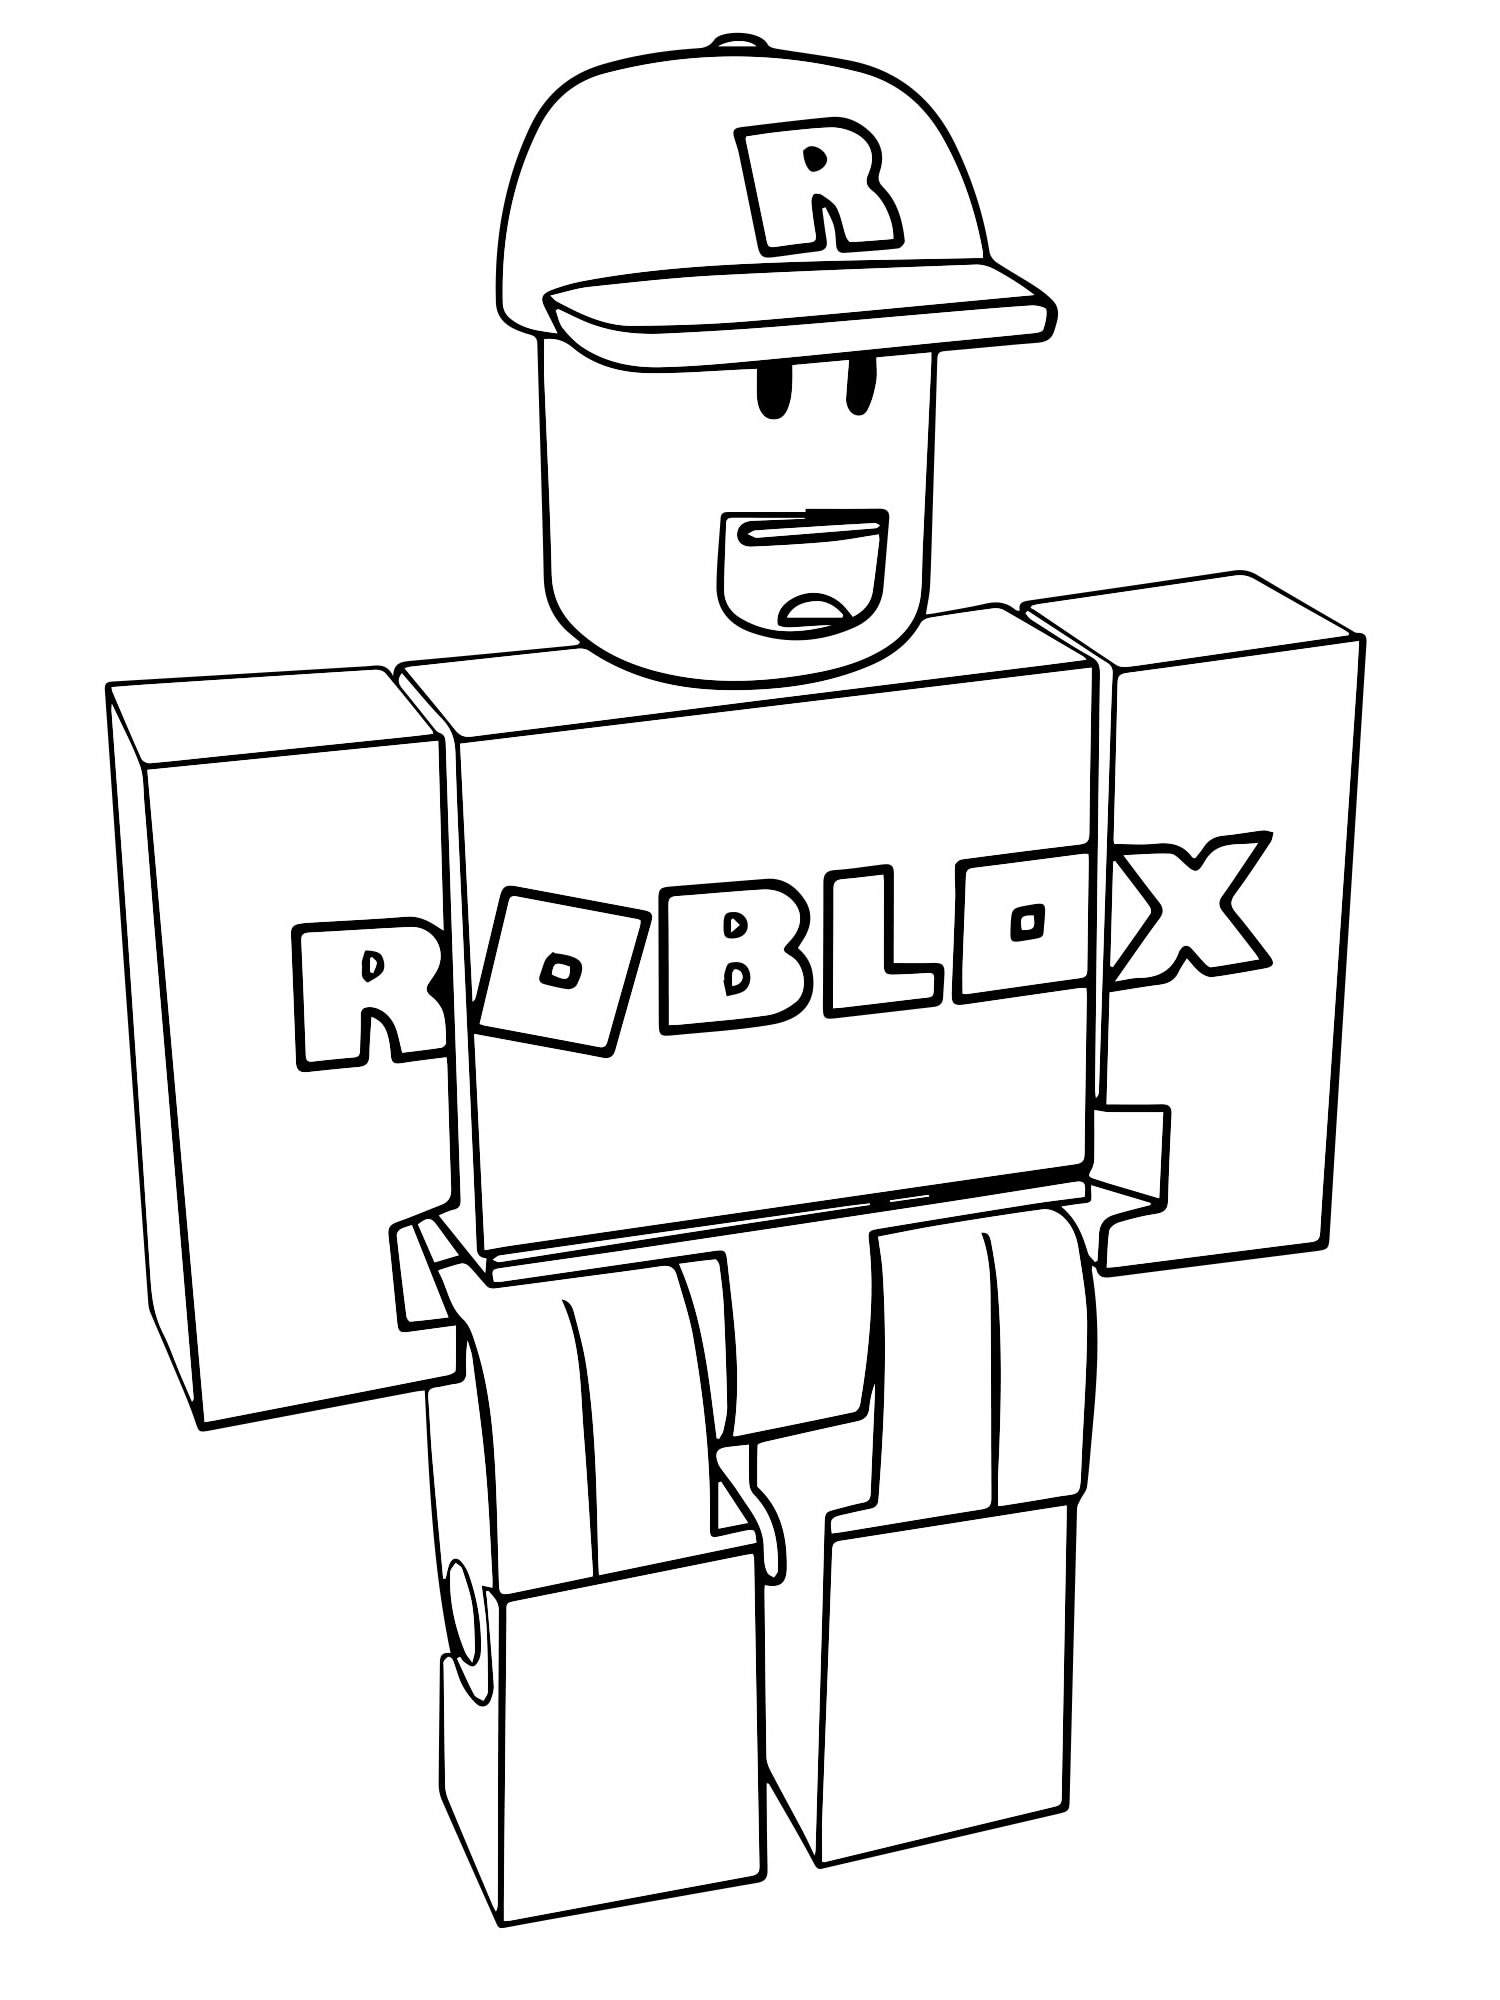 Игра Роблокс раскраска для детей